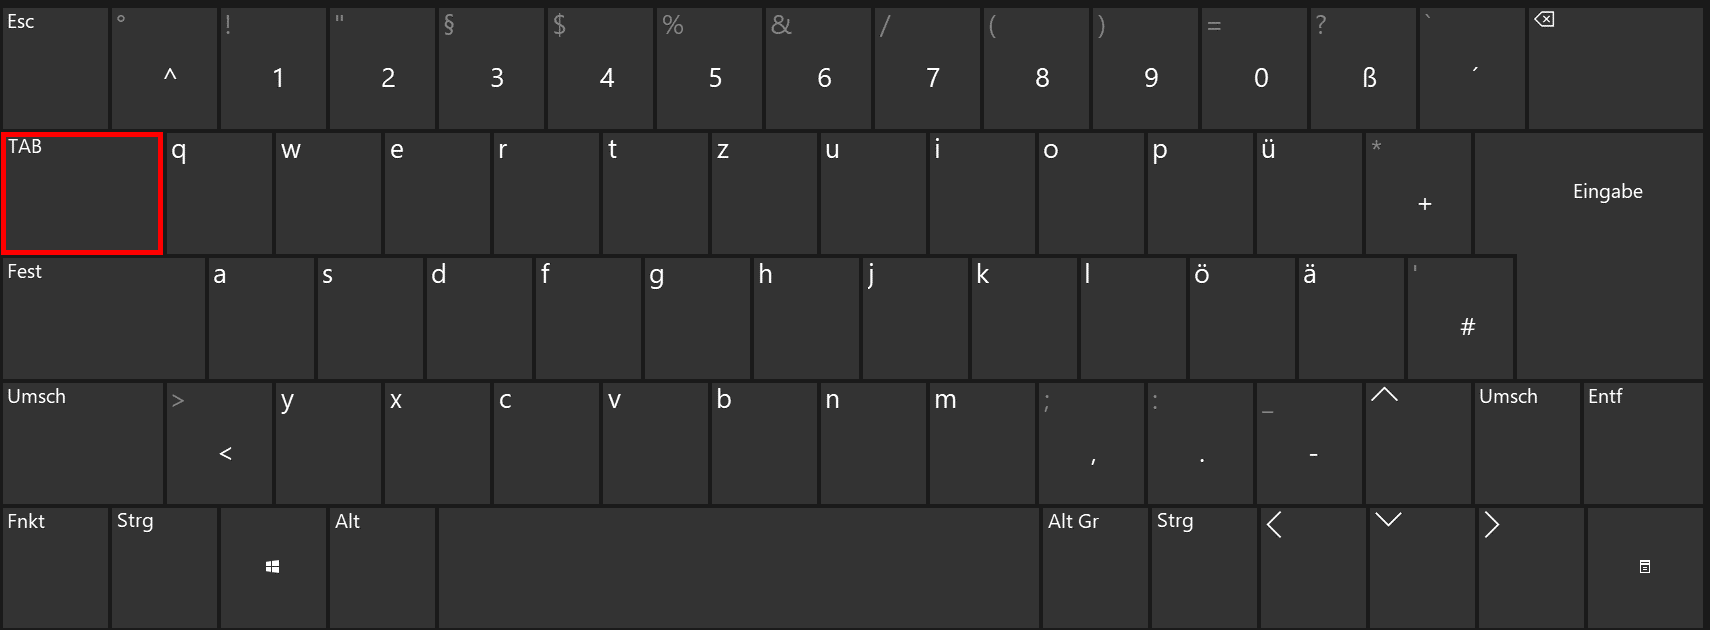 Tab-Taste auf einer deutschsprachigen Tastatur